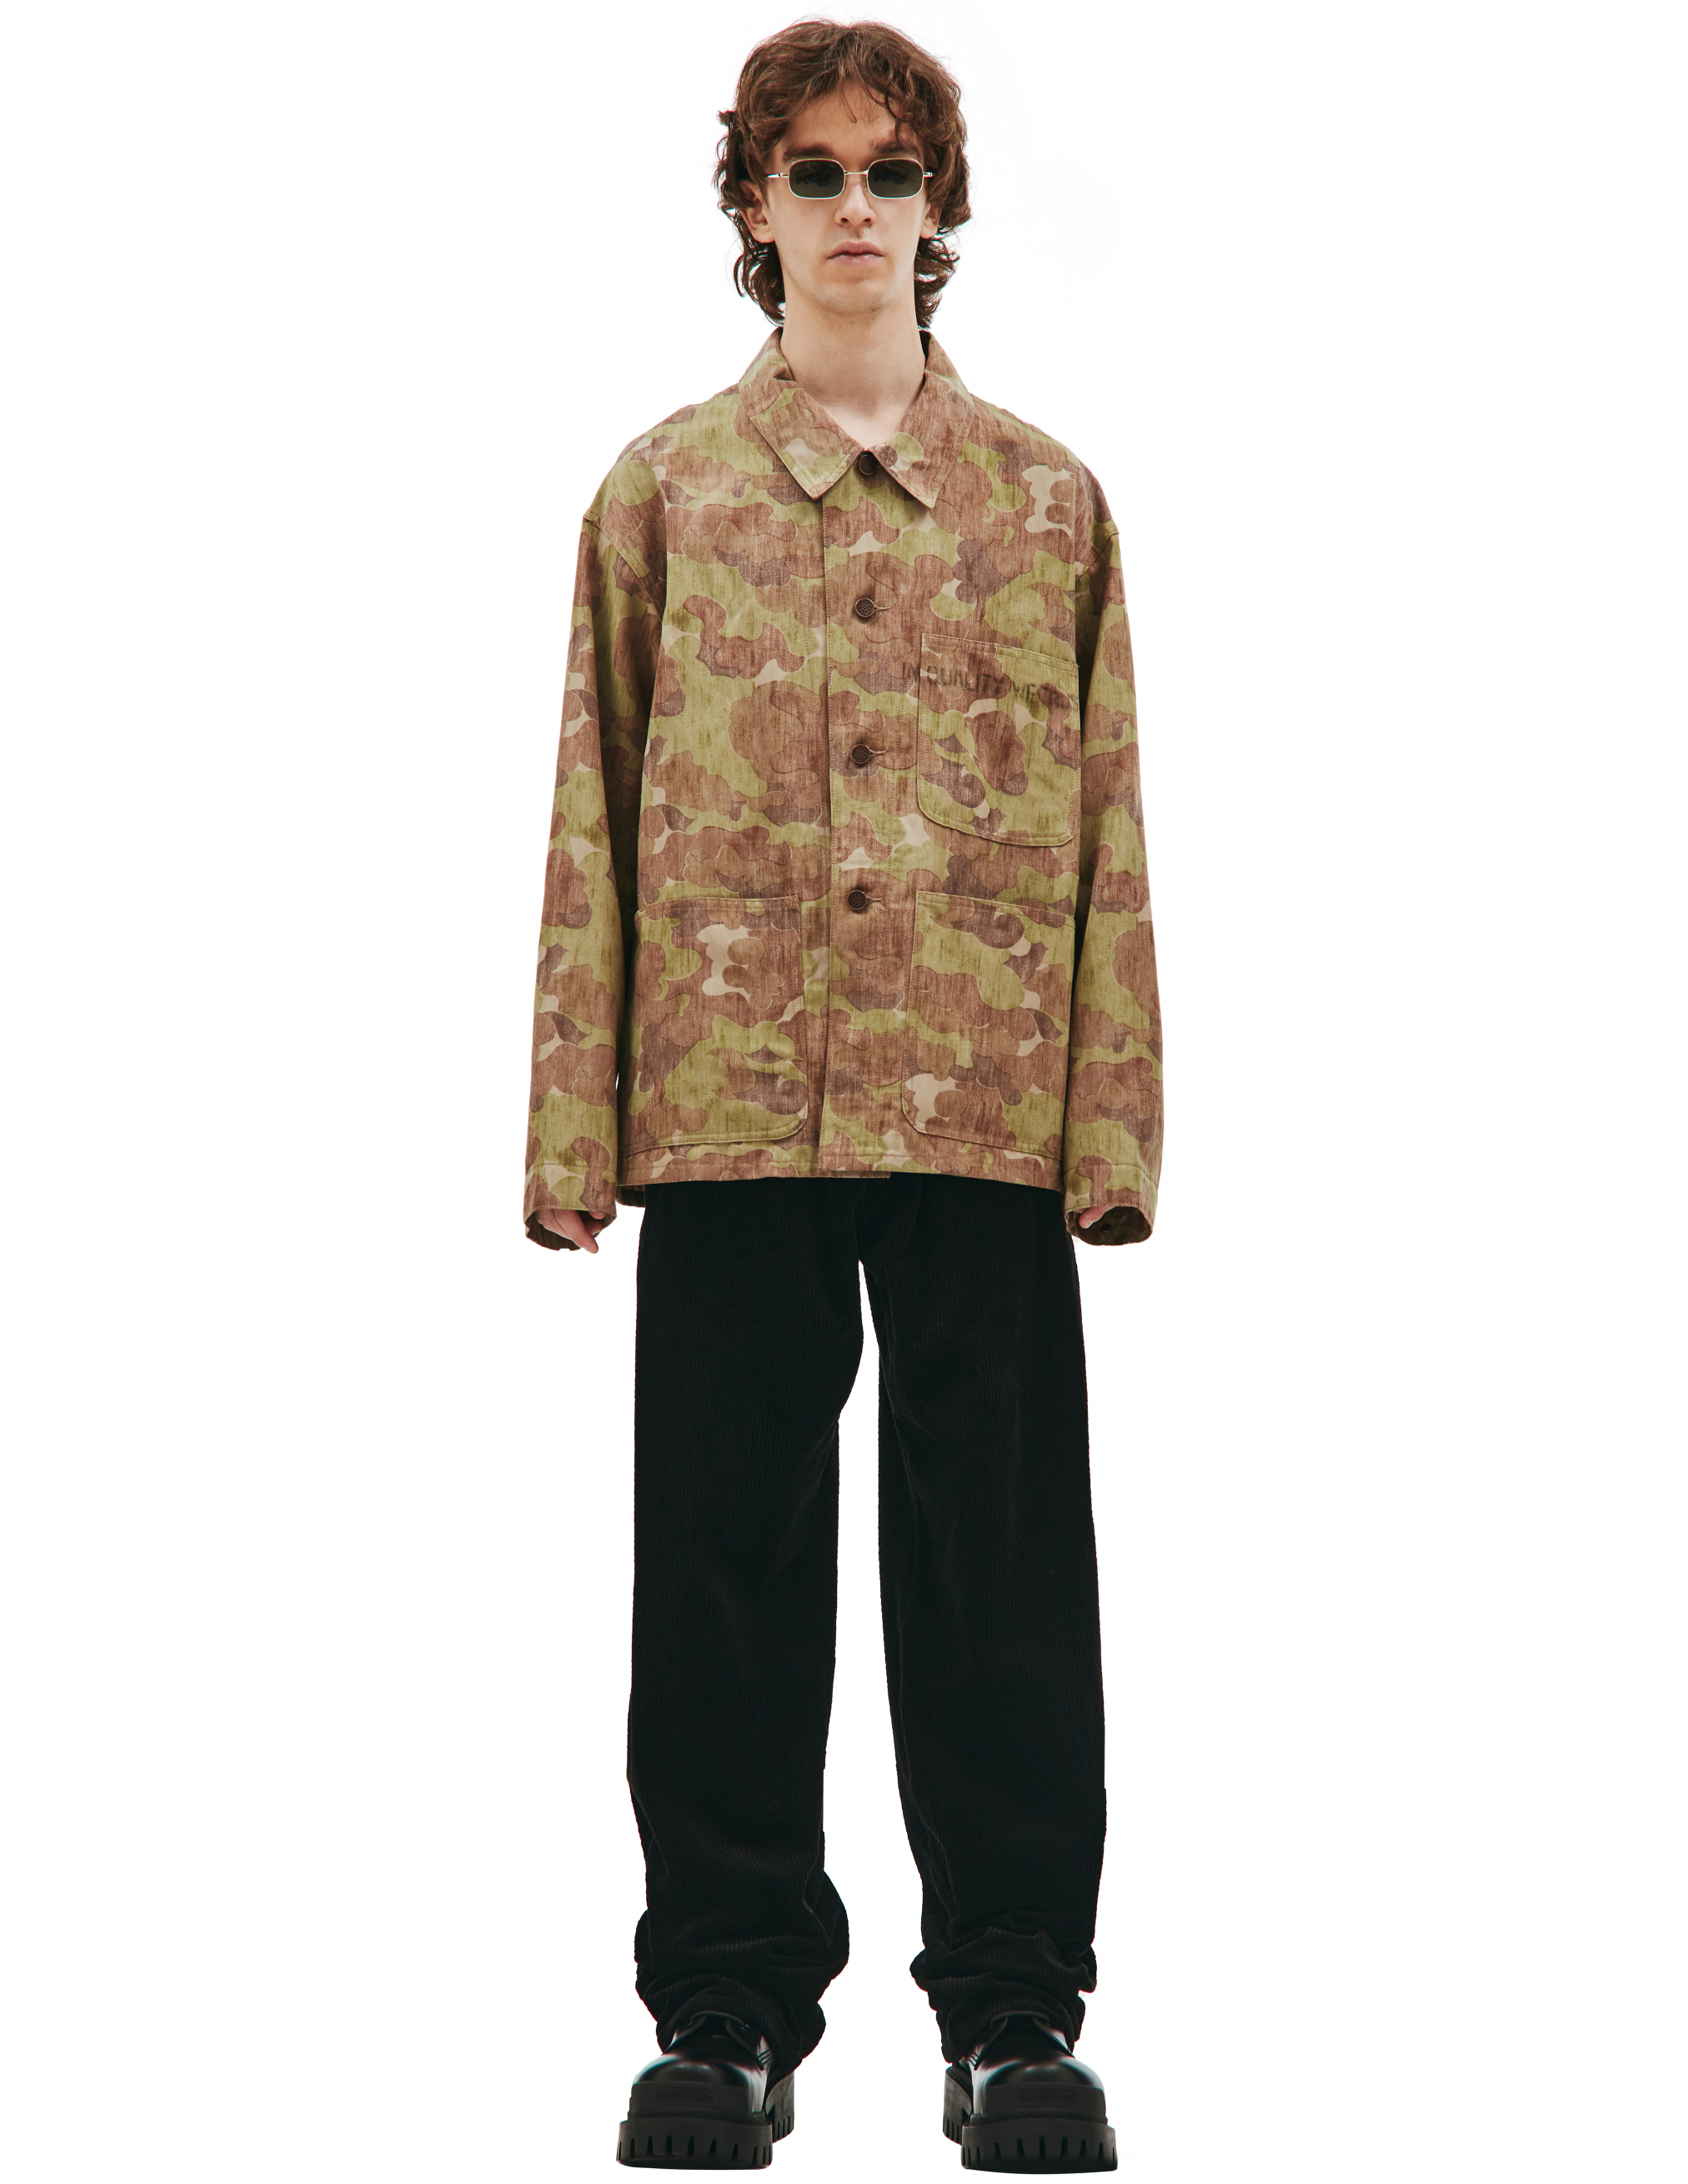 Куртка с камуфляжным принтом Visvim 0121205013018/camo, размер 5;4